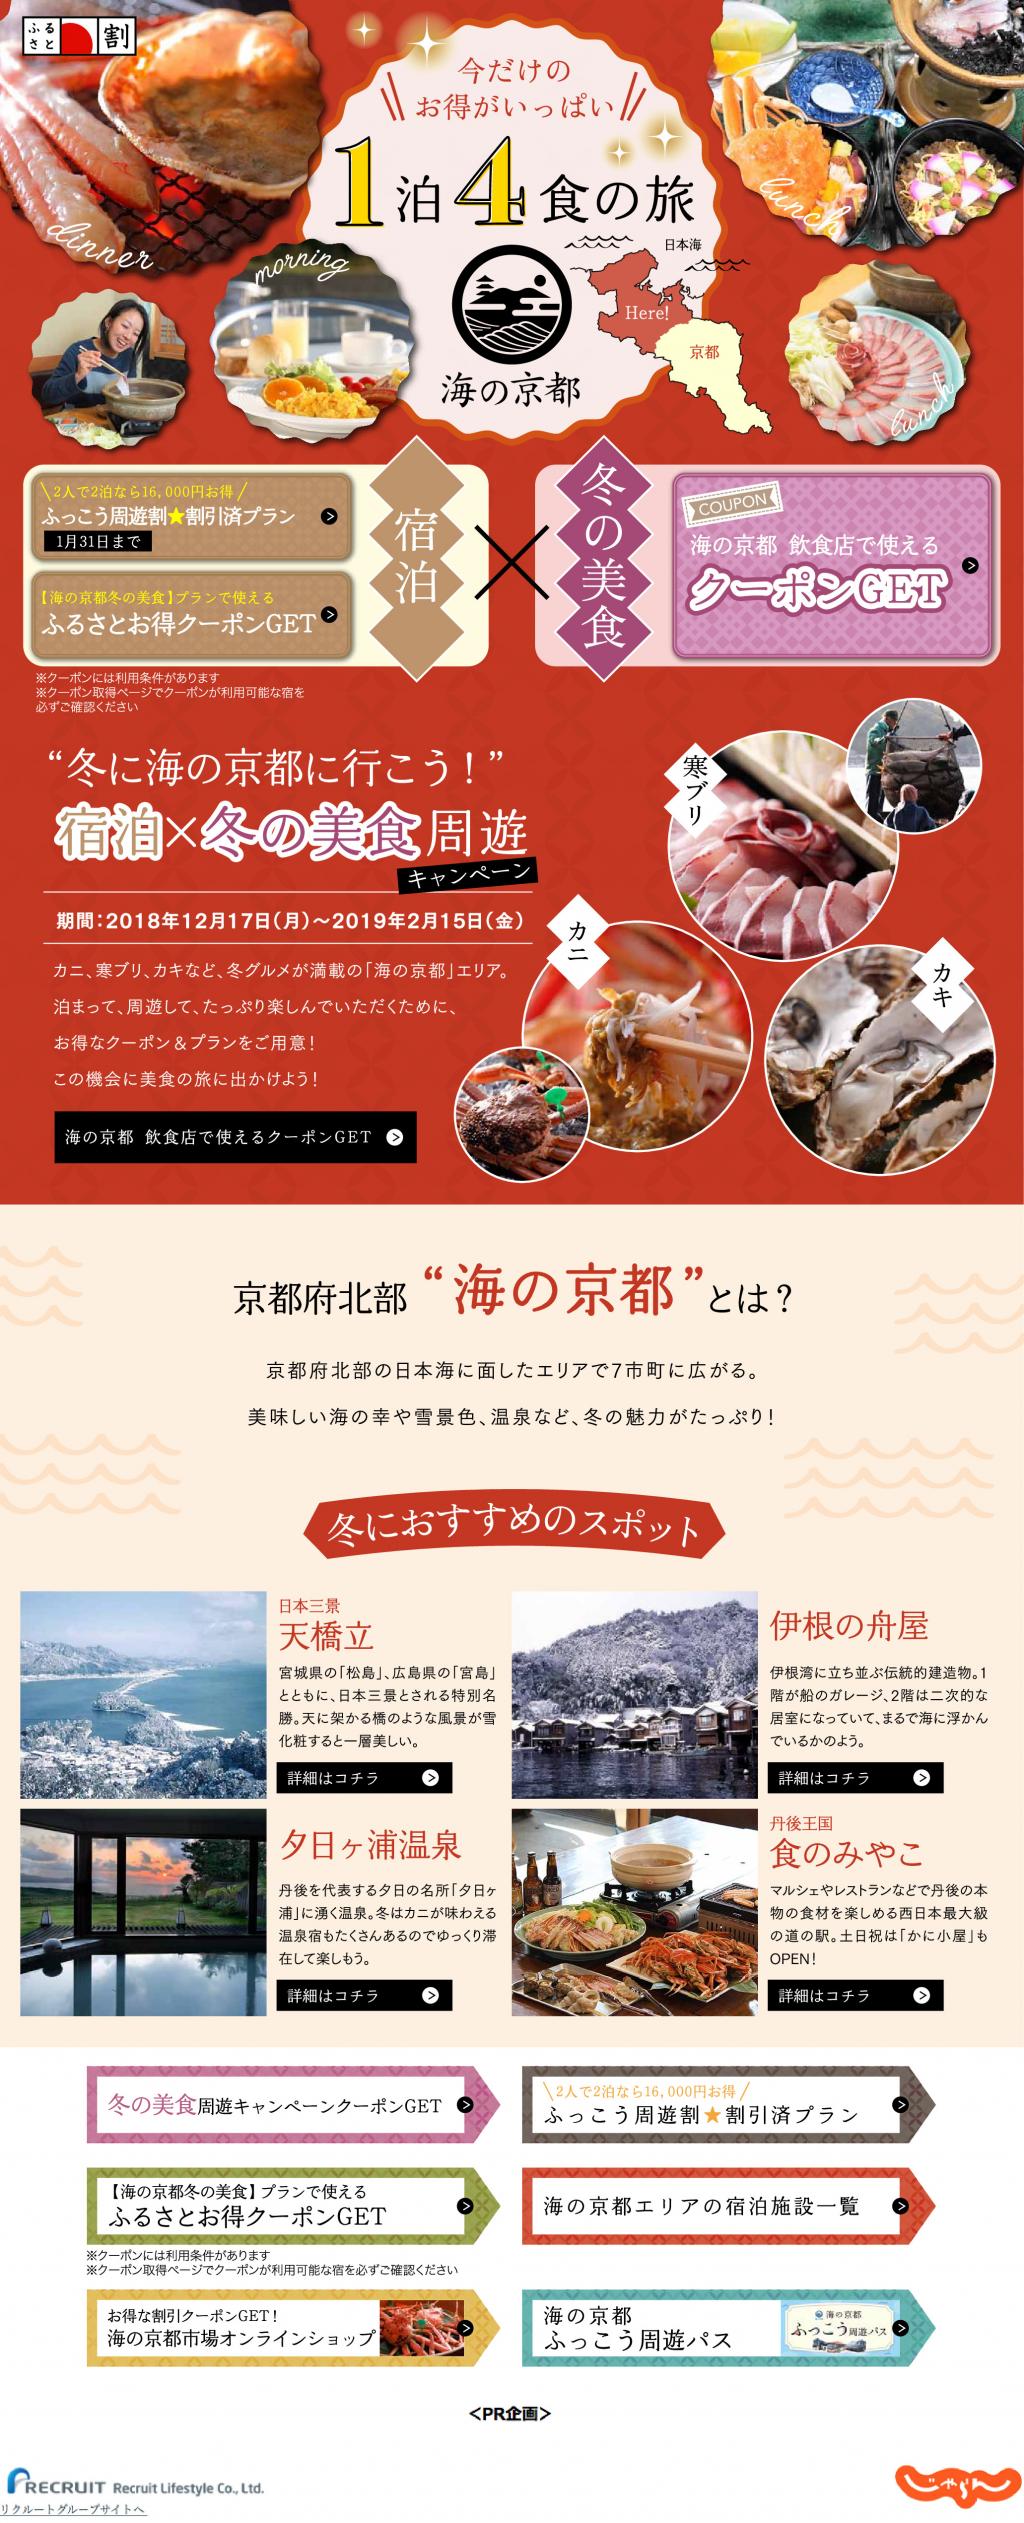 海の京都観光キャンペーン第3弾！「冬に海の京都に行こう！」宿泊×冬の美食周遊キャンペーン